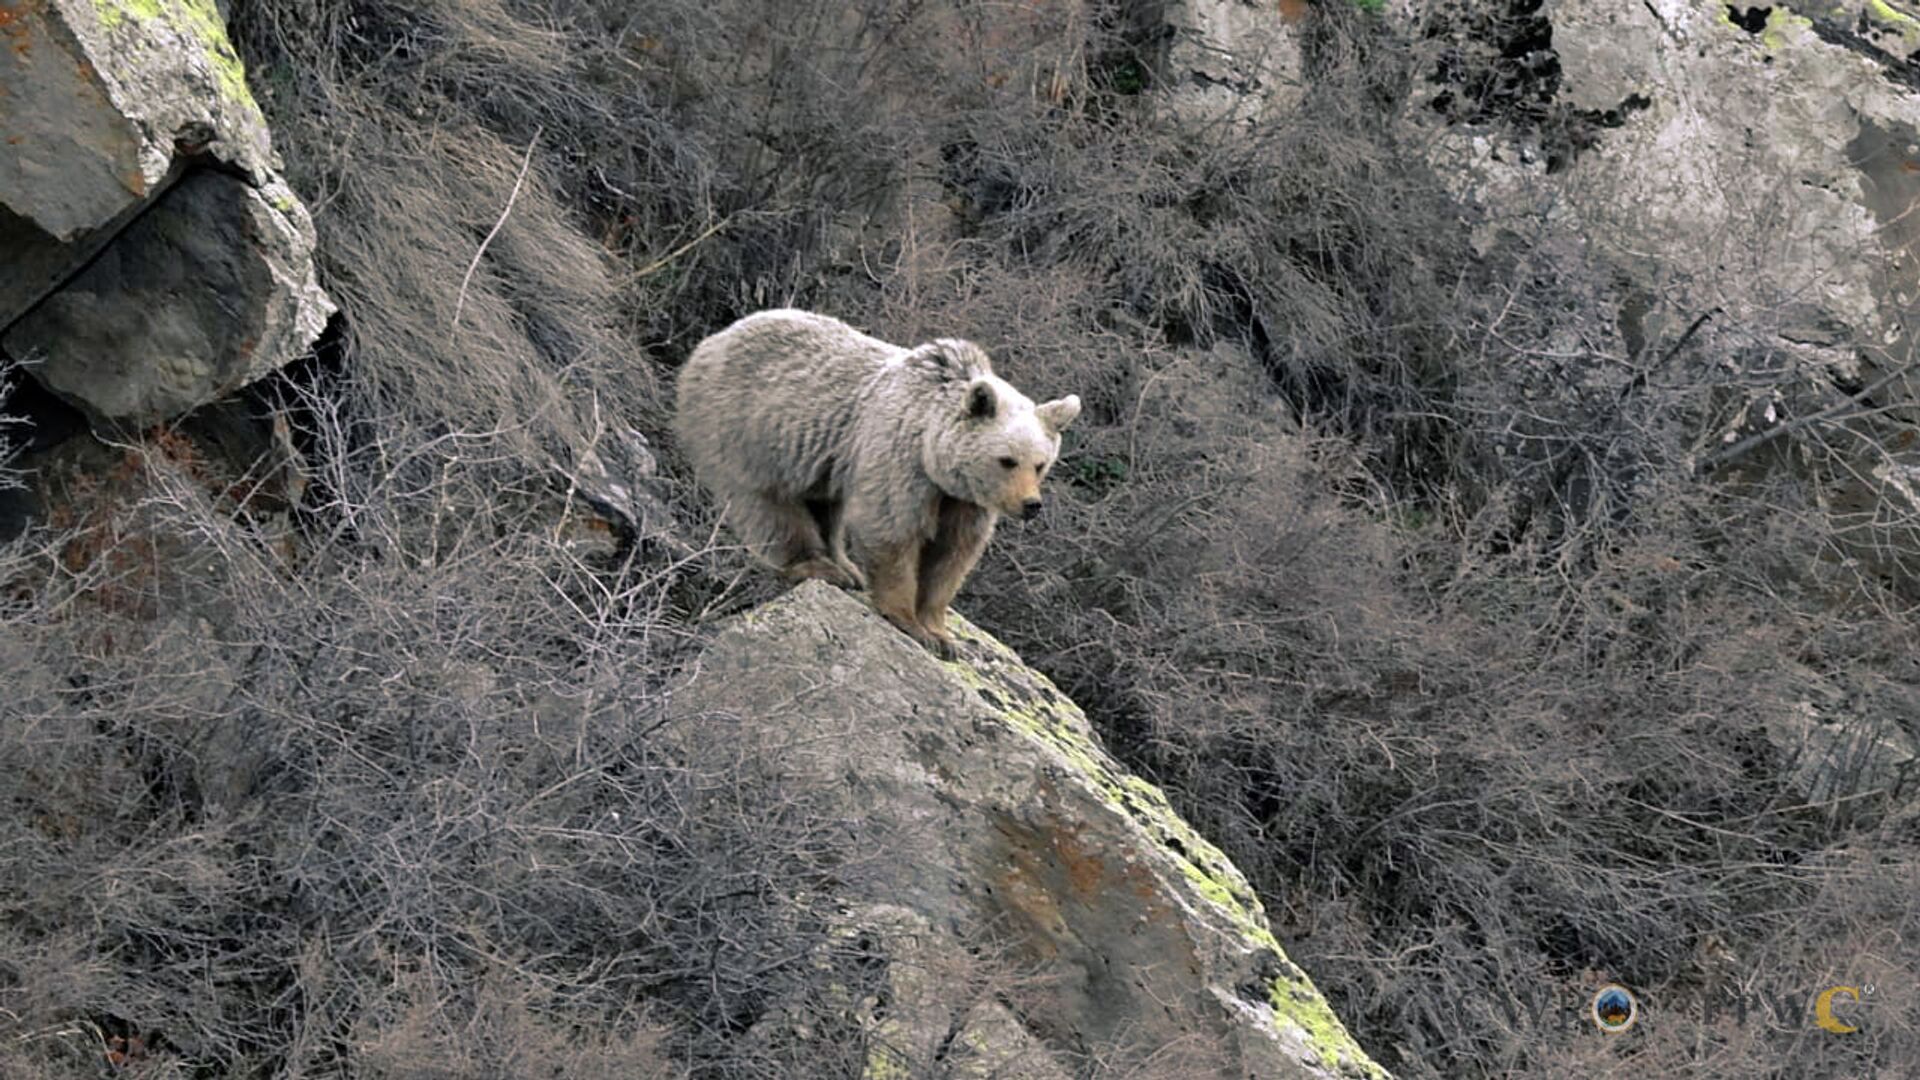 Камеры биосферного заповедника зафиксировали быт бурых медведей в лесах Армении - Sputnik Армения, 1920, 11.05.2021